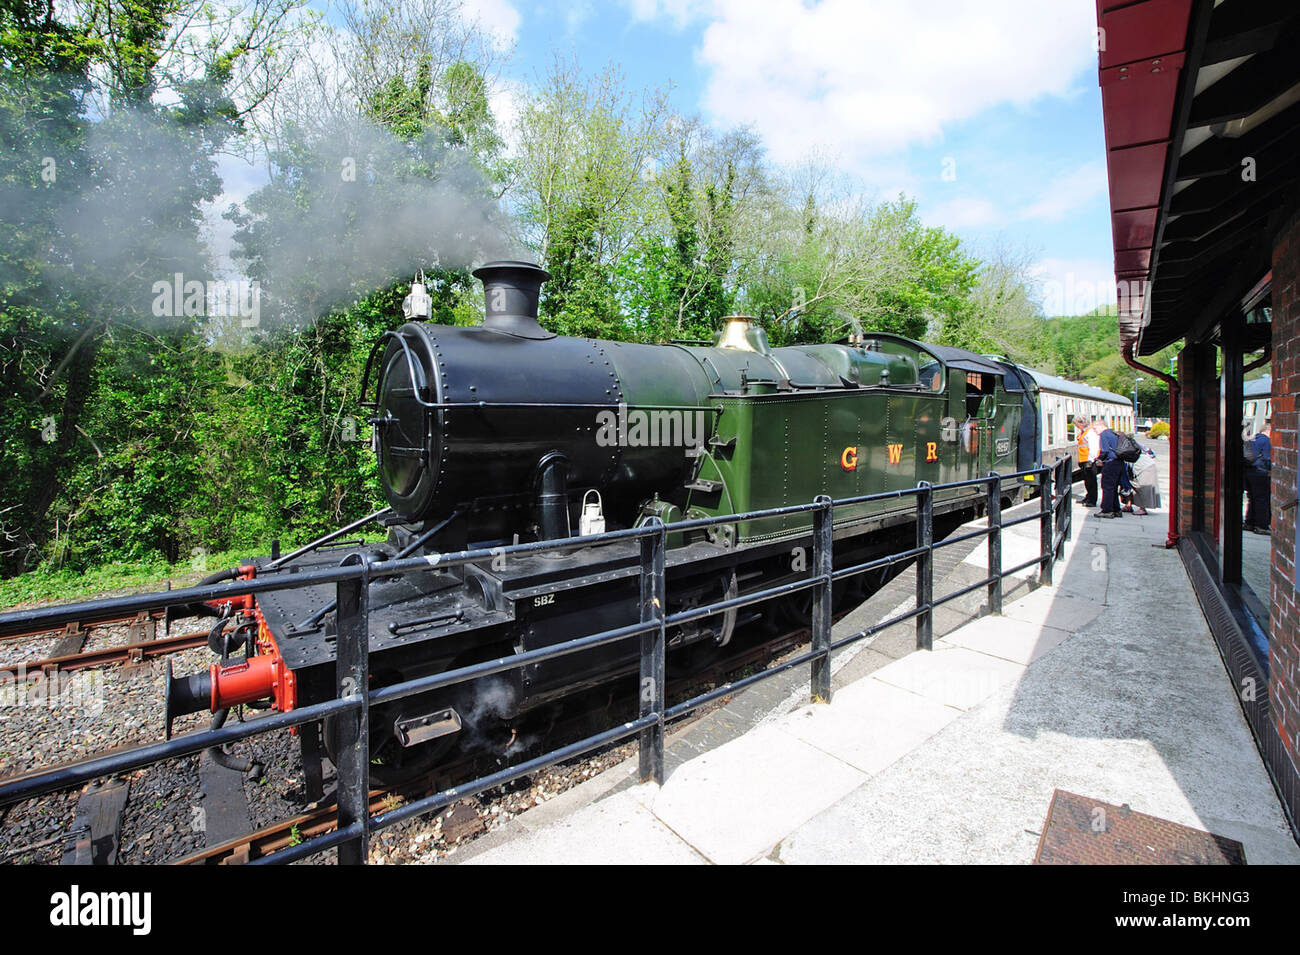 Bodmin Parkway train à vapeur laissant, Cornwall, UK Banque D'Images